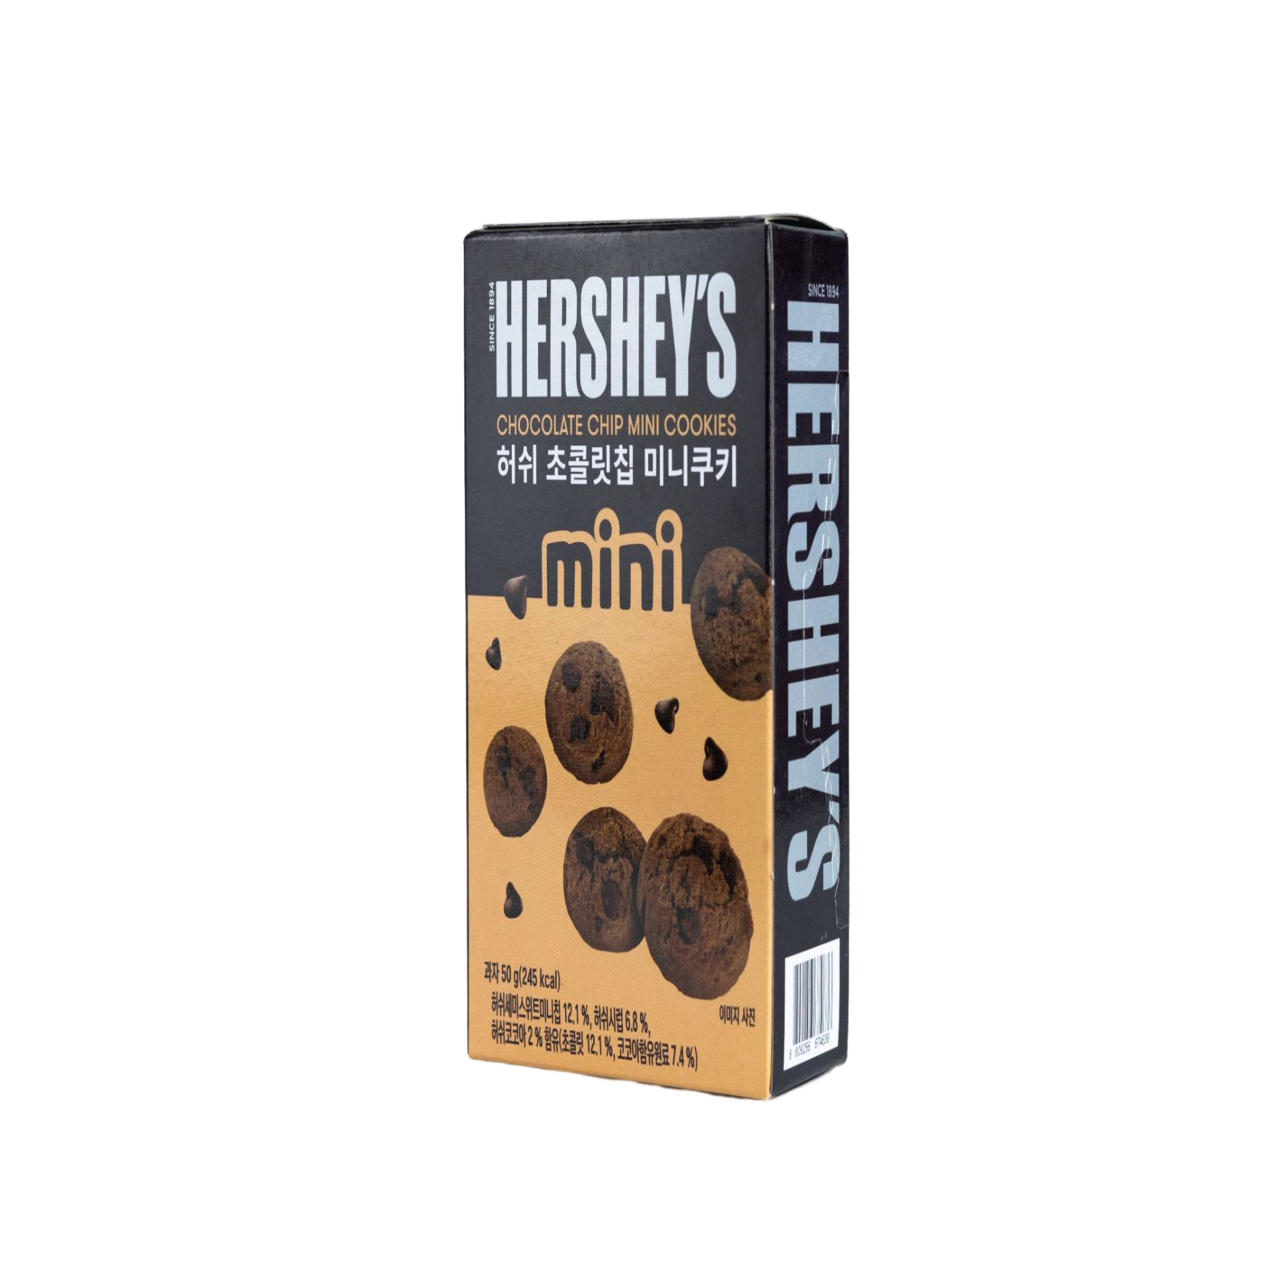 Hershey’s chocolate chip mini cookies